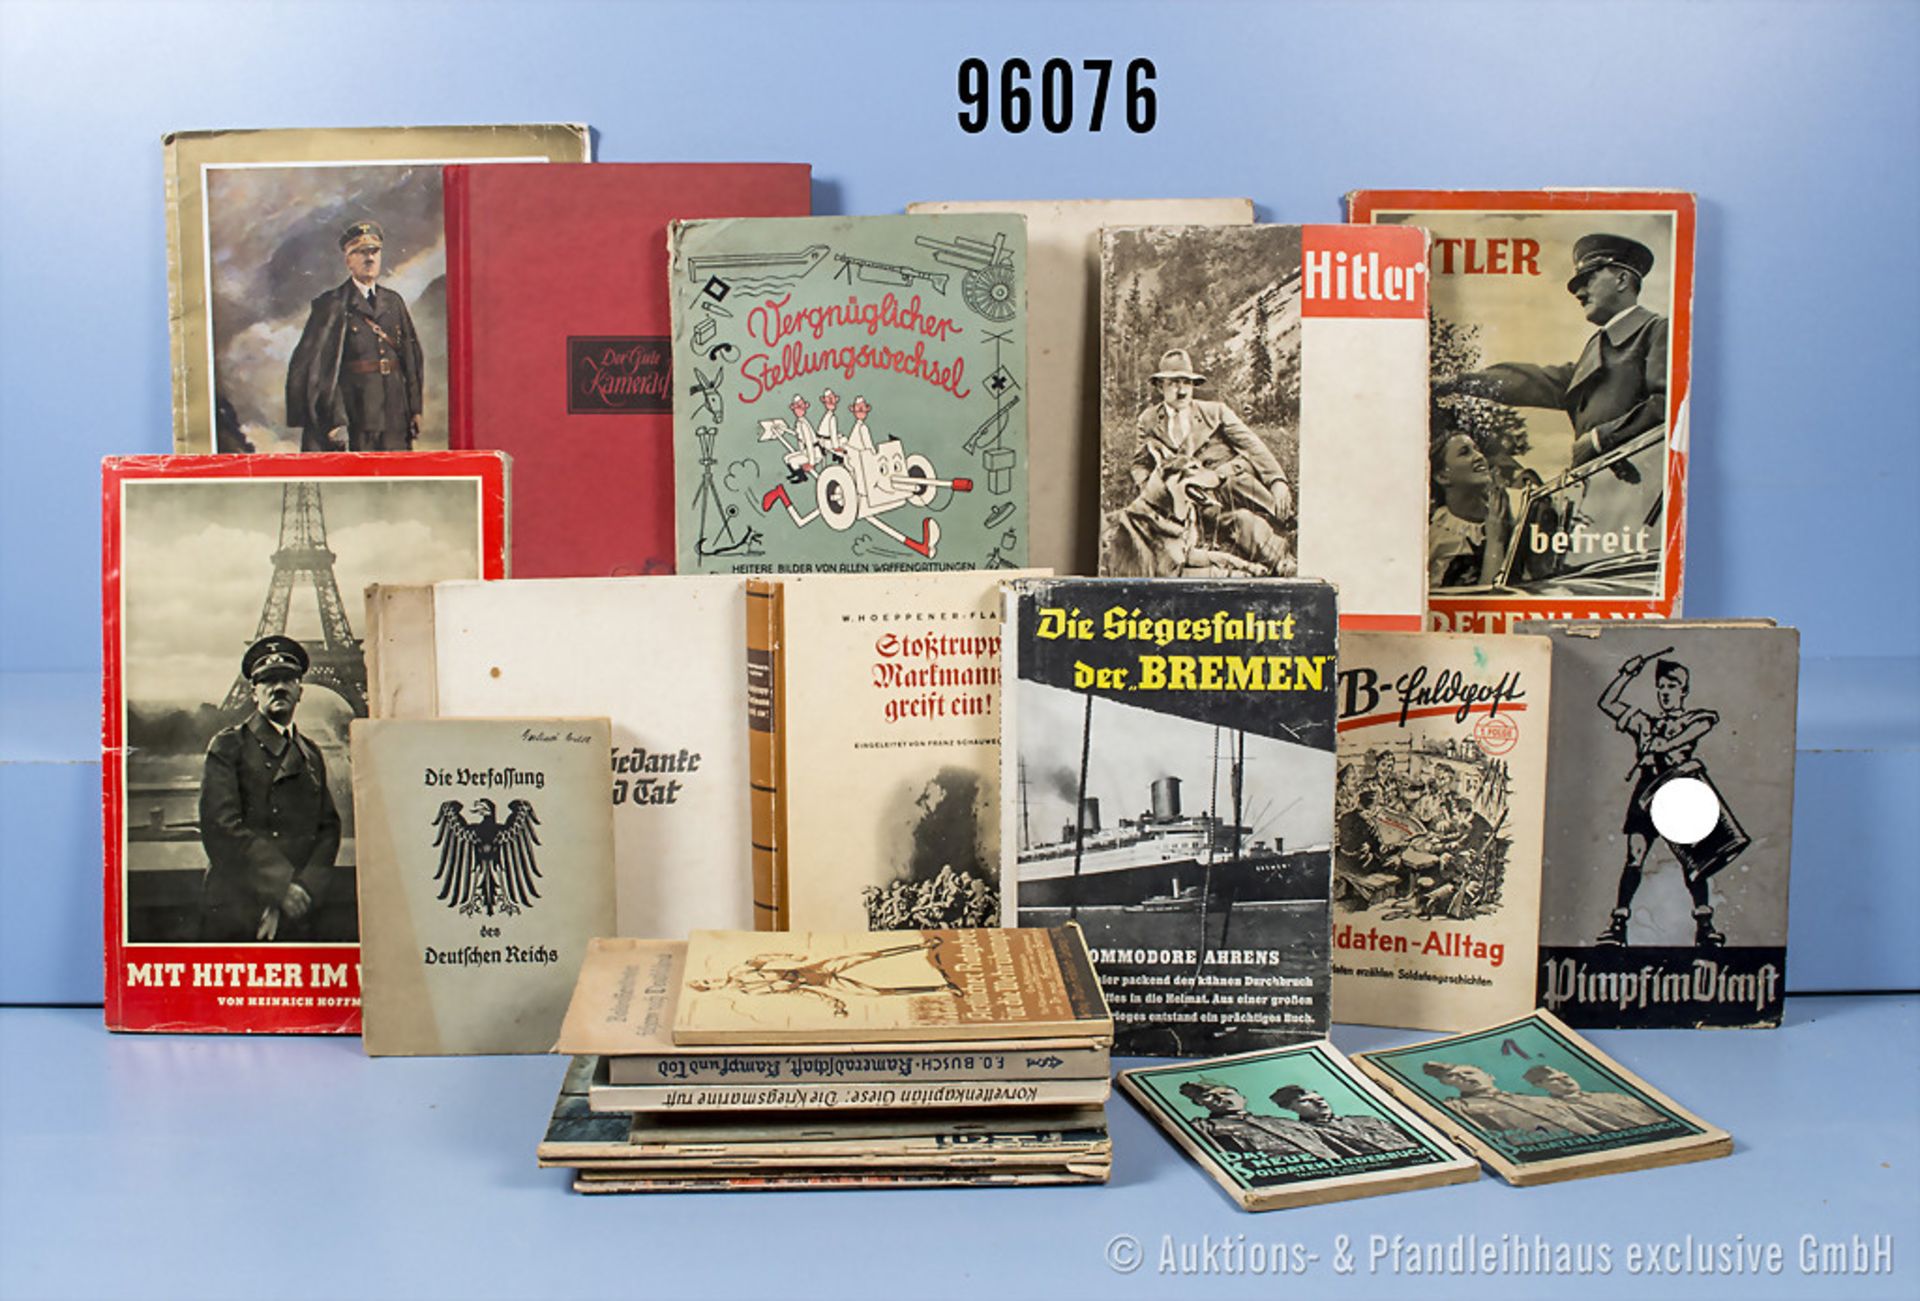 Konv. Bücher/Broschüren, überwiegend 3. Reich, u. a. "Hitler wie ihn keiner kennt", ...